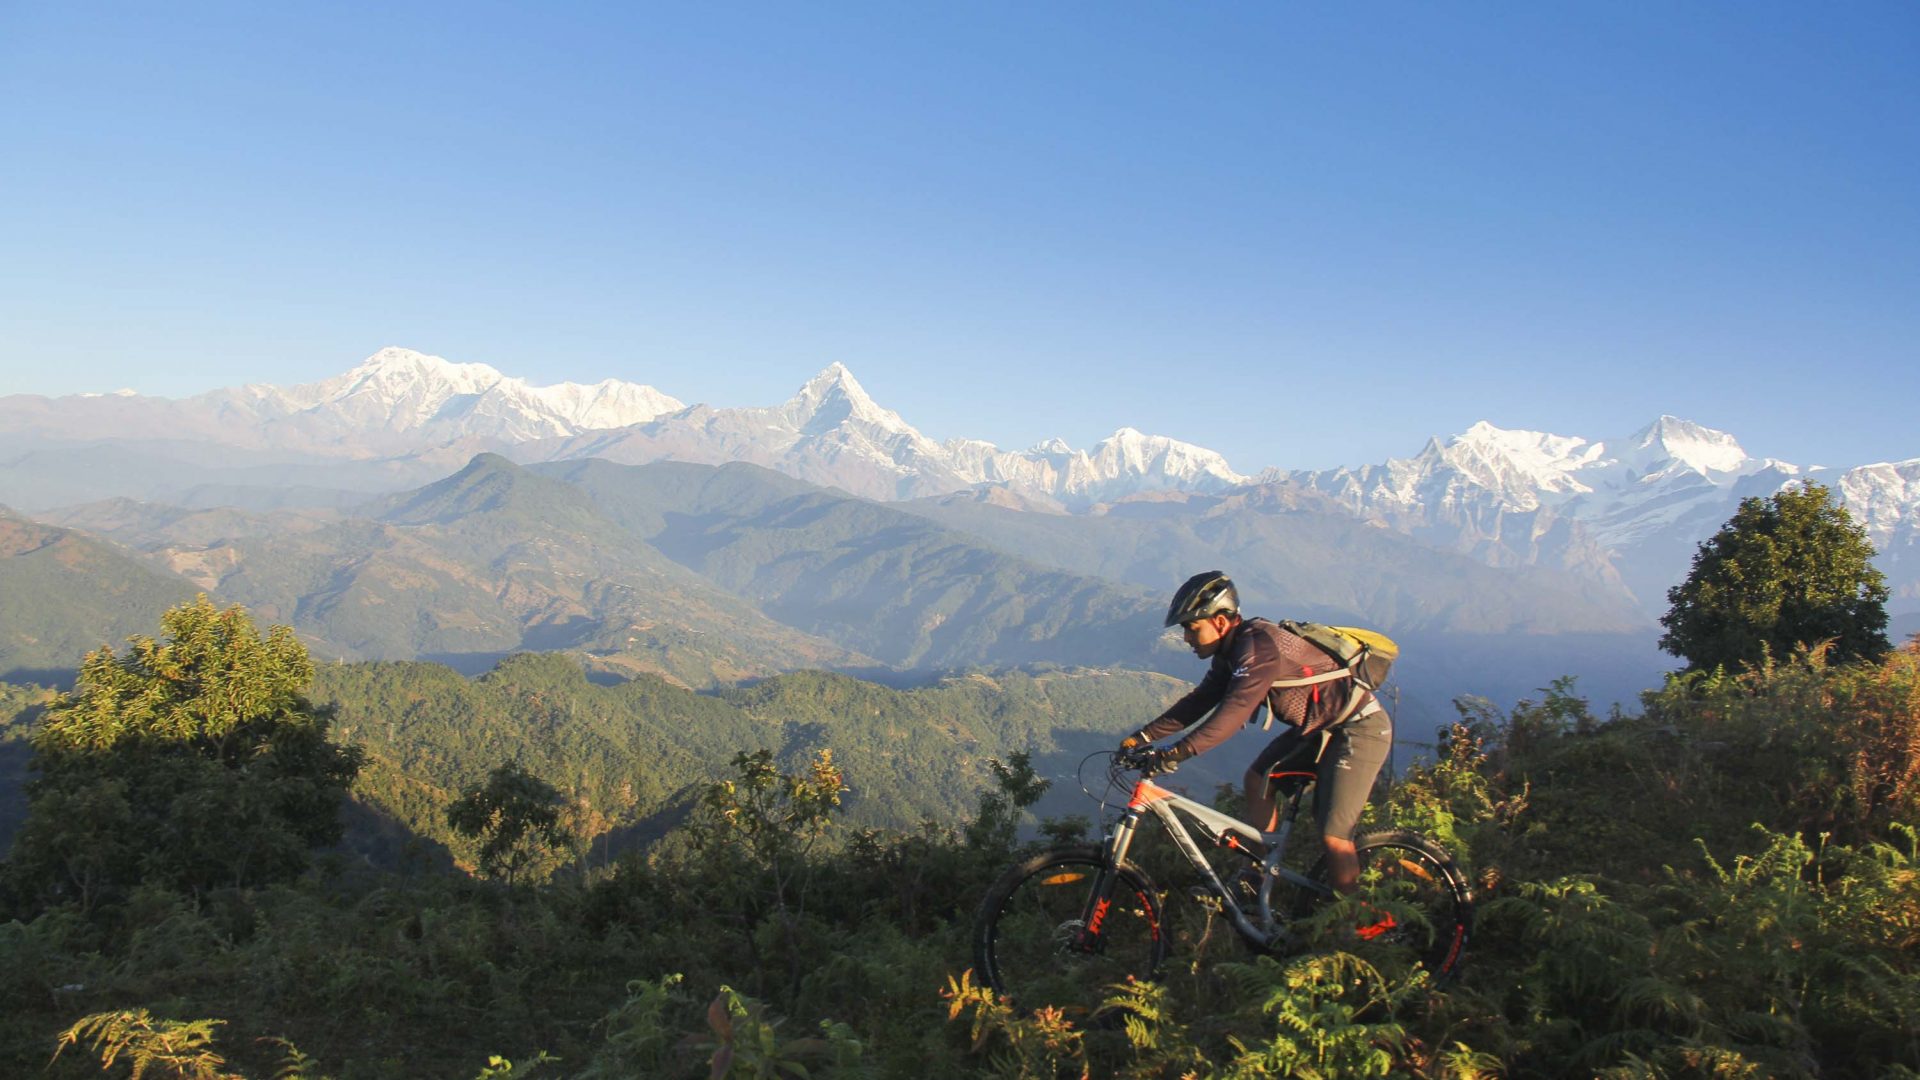 Biking in Nepal's stunning Himalayan Mountain Range.